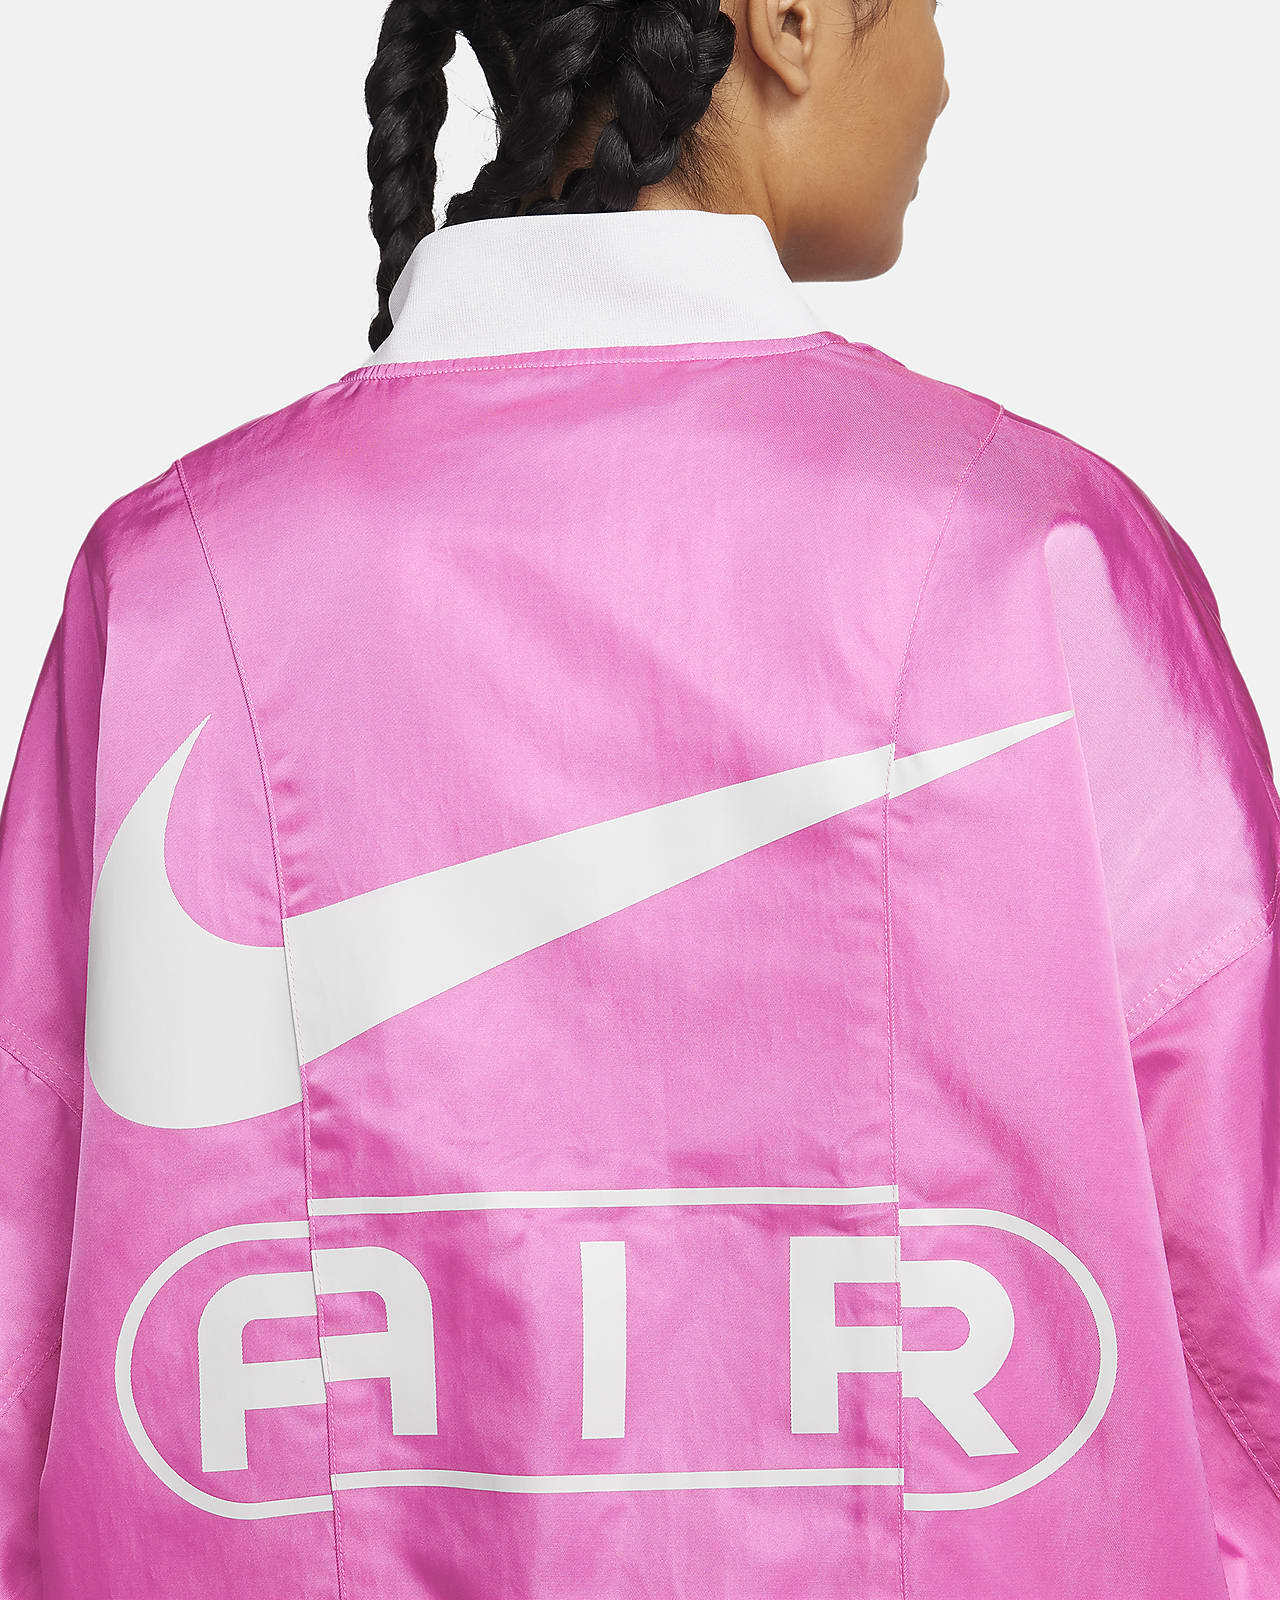 Nike Air Women's Oversized Woven Bomber Jacket.